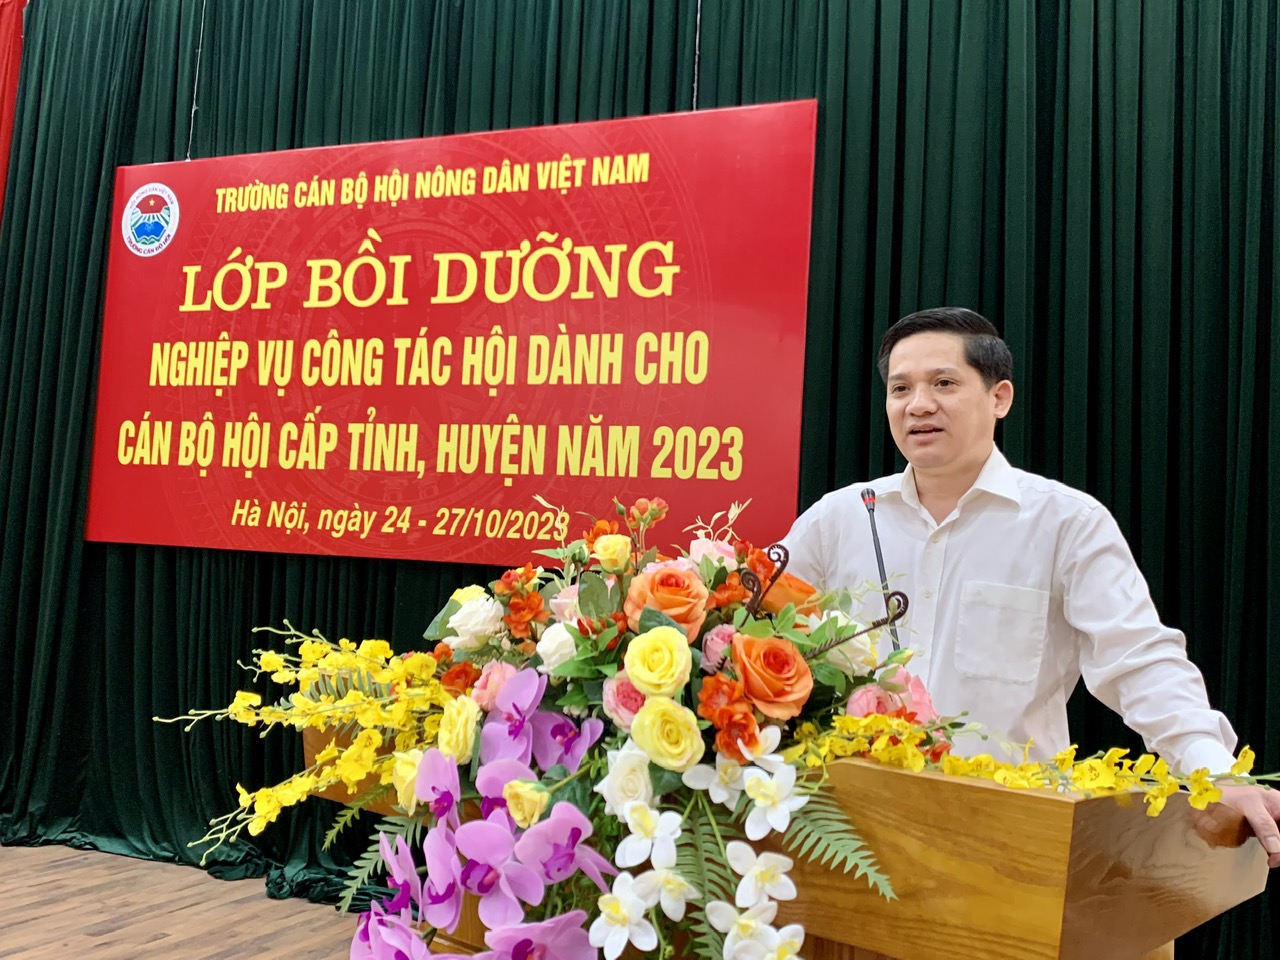 Trường Cán bộ Hội Nông dân Việt Nam khai giảng lớp bồi dưỡng nghiệp vụ công tác Hội cho cán bộ Hội cấp tỉnh, huyện - Ảnh 1.